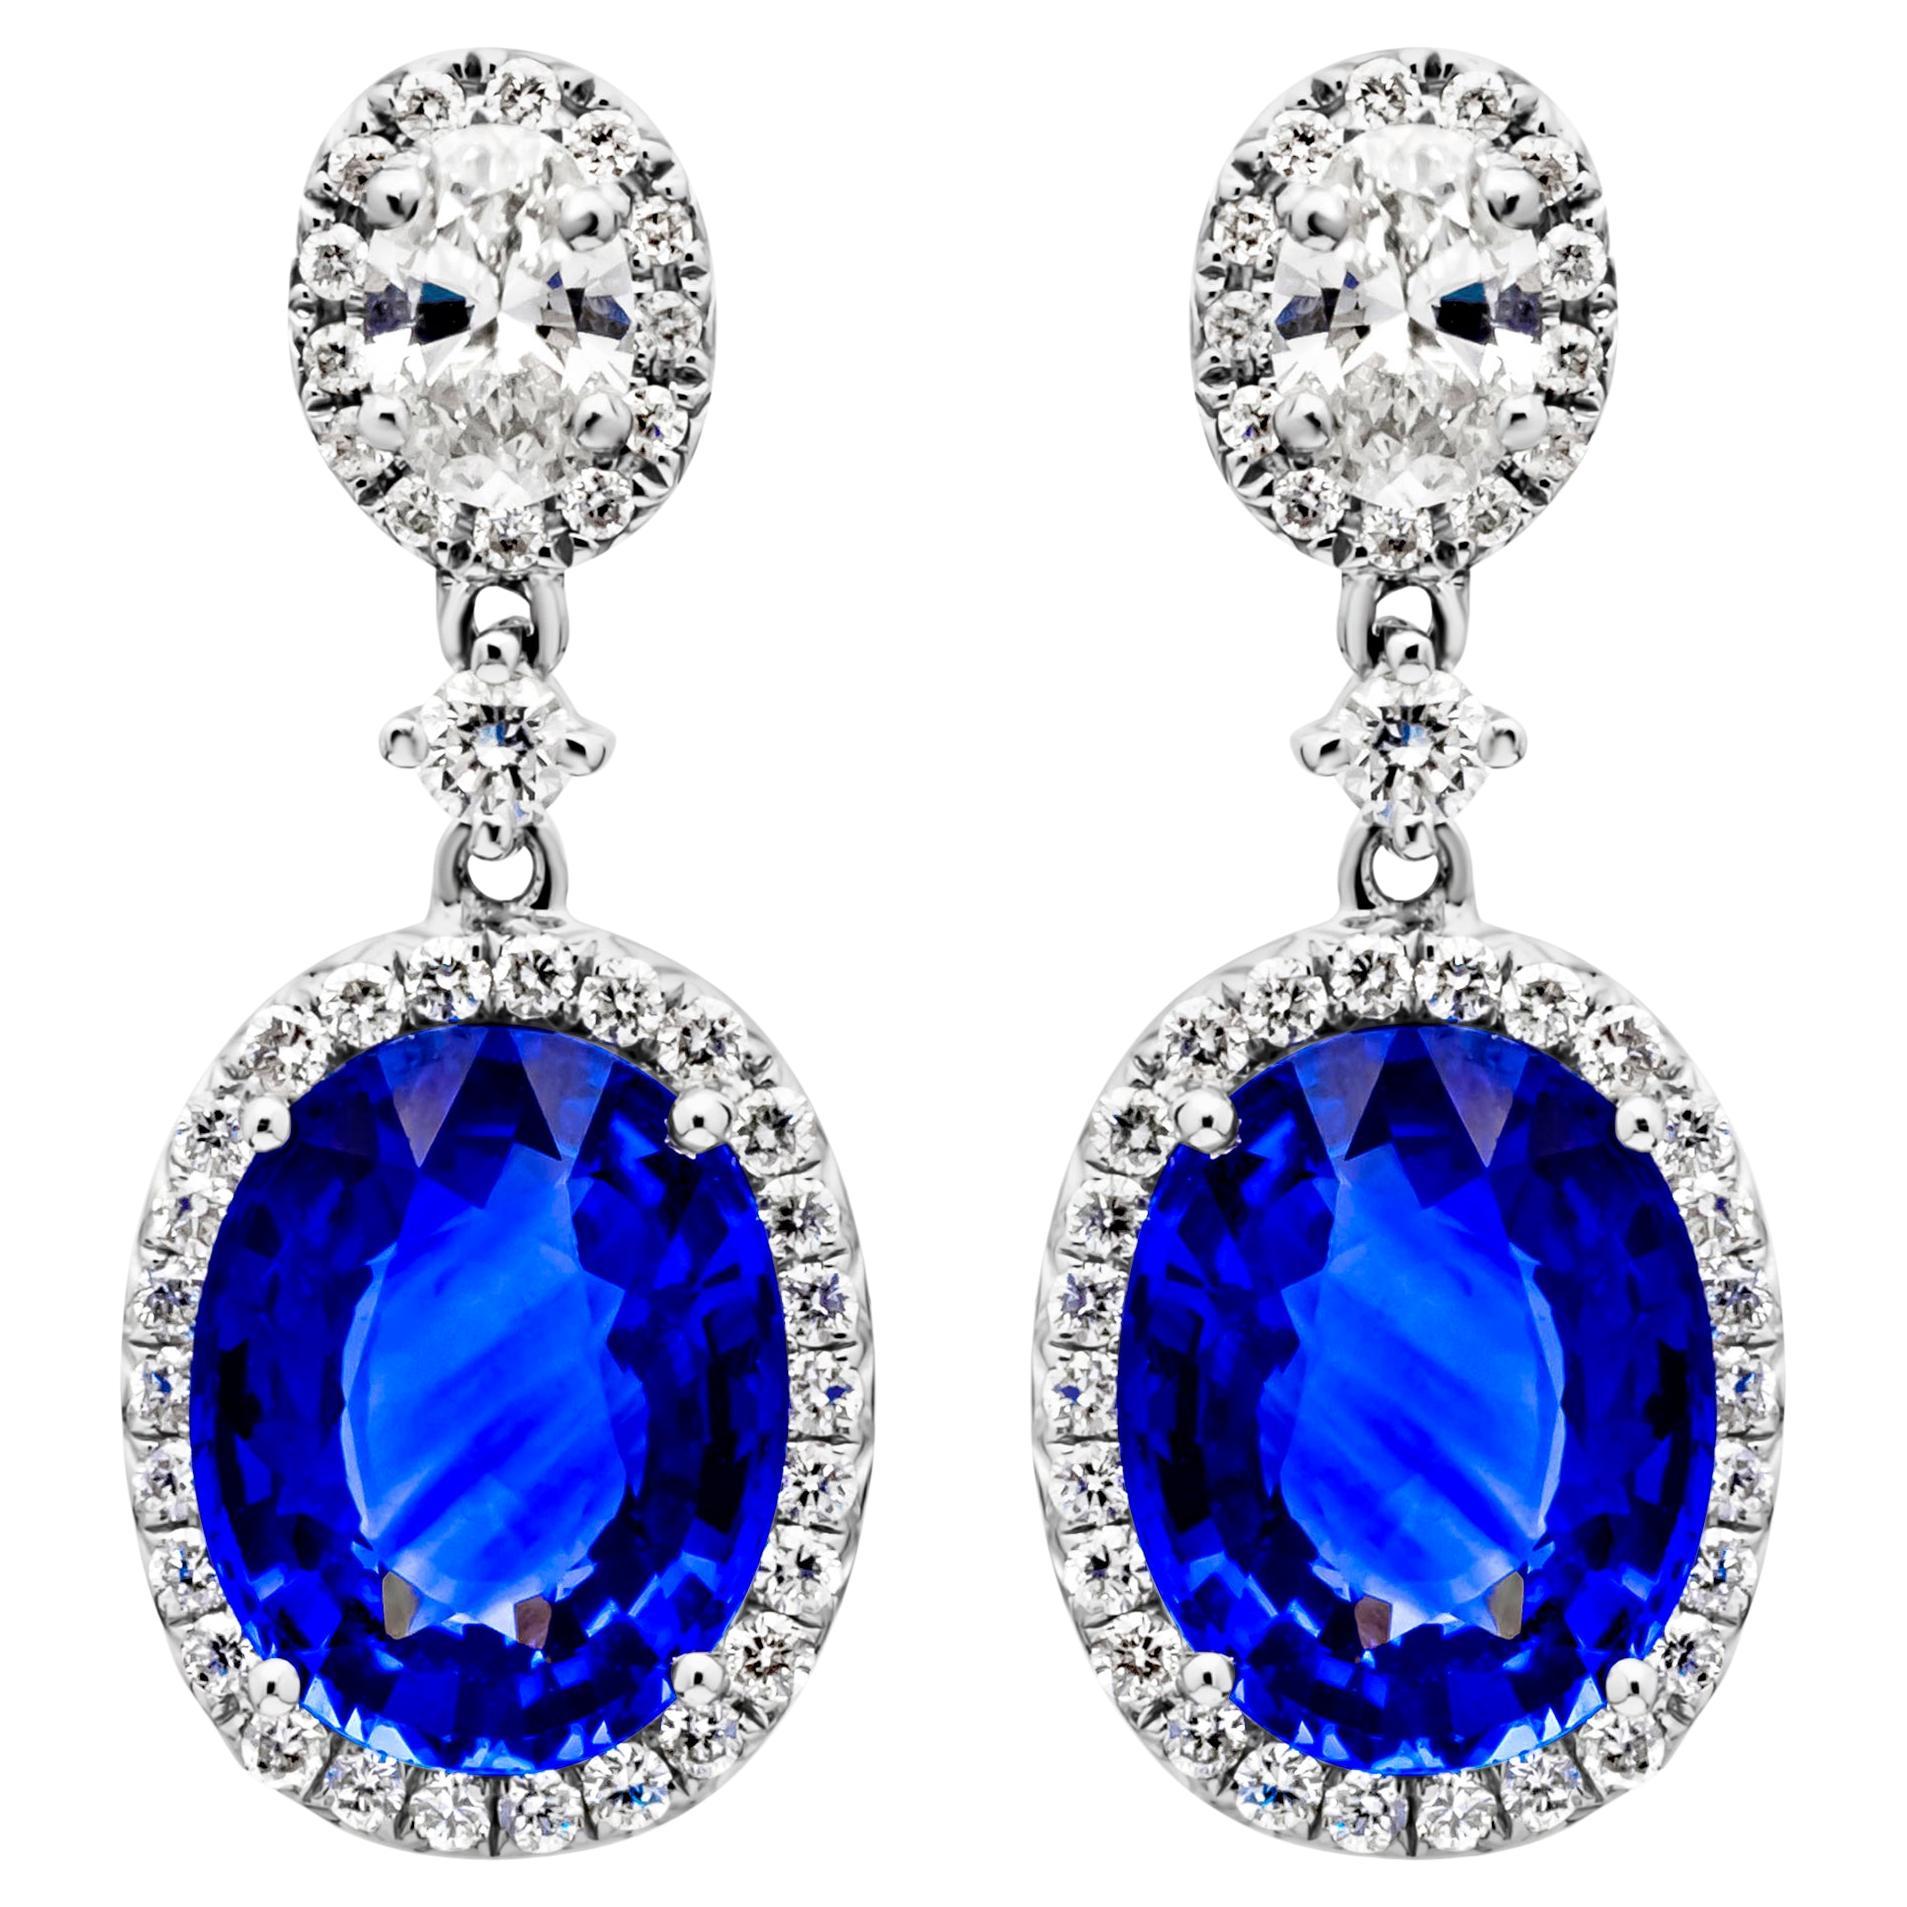 Pendants d'oreilles Roman Malakov avec saphir bleu taille ovale et diamants de 4,38 carats au total